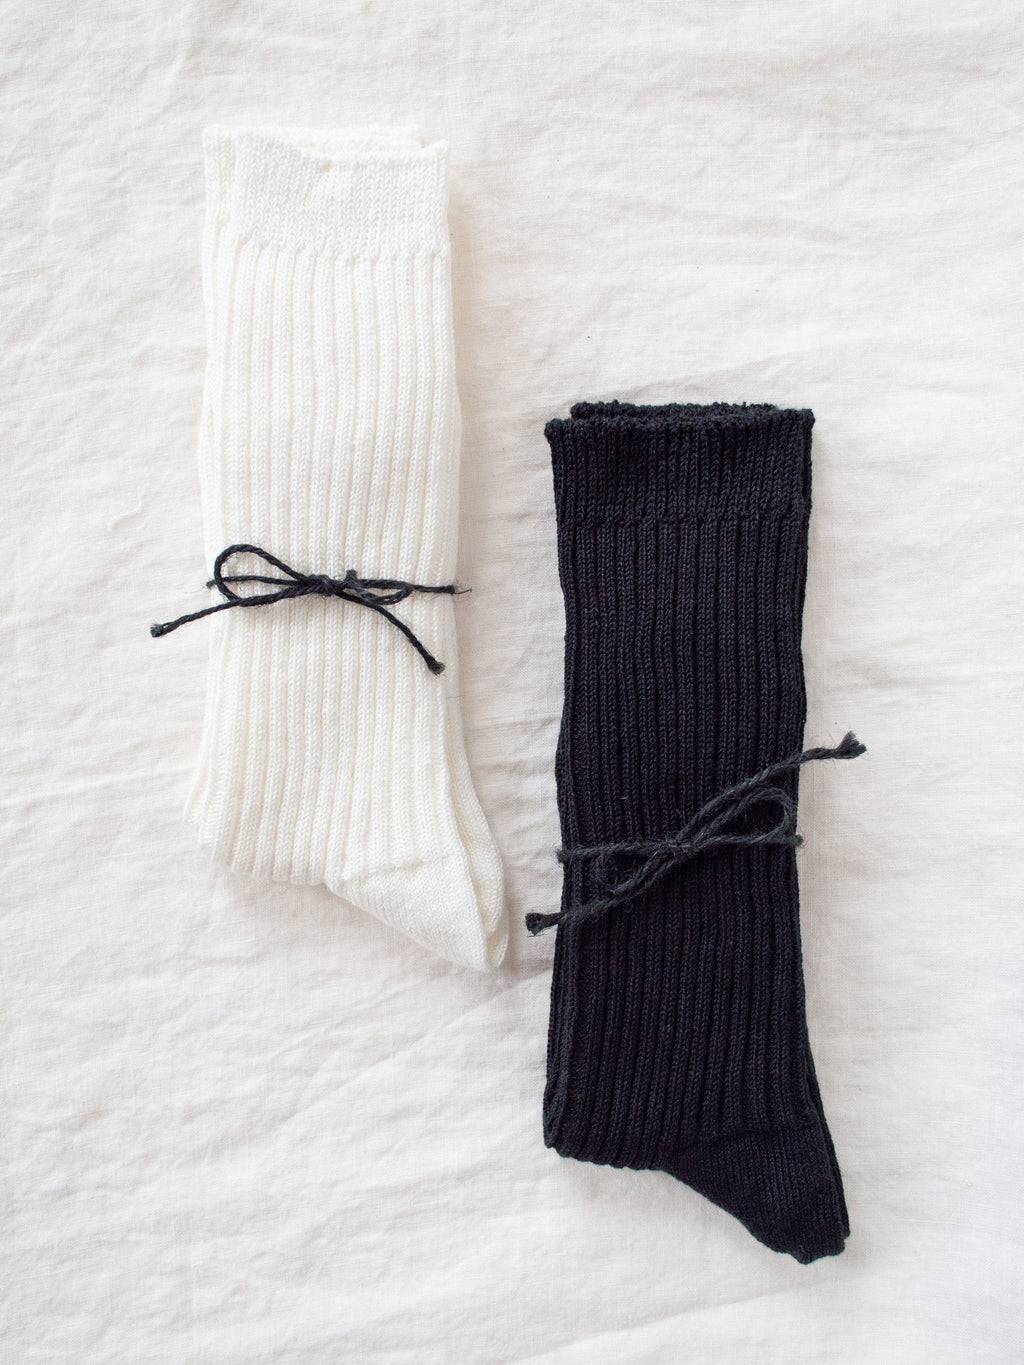 Namu Shop - Ichi Antiquites Linen Rib Socks - White, Black (restocked)